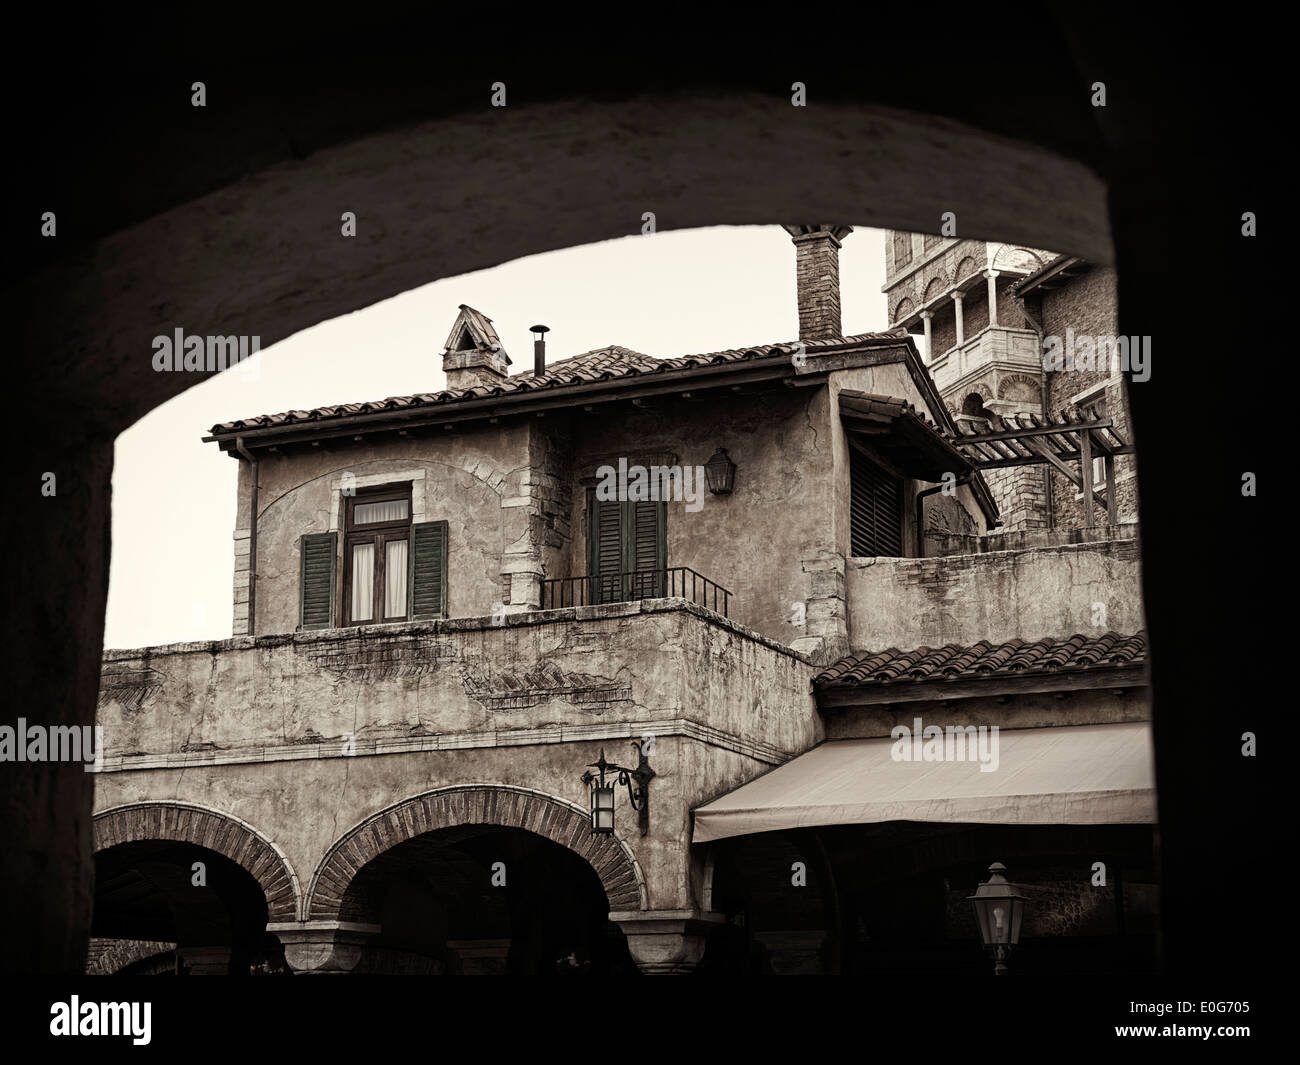 Foto artistiche di antica casa europea sotto un arco, architettura veneziana dettaglio, in bianco e nero dai toni seppia Foto Stock